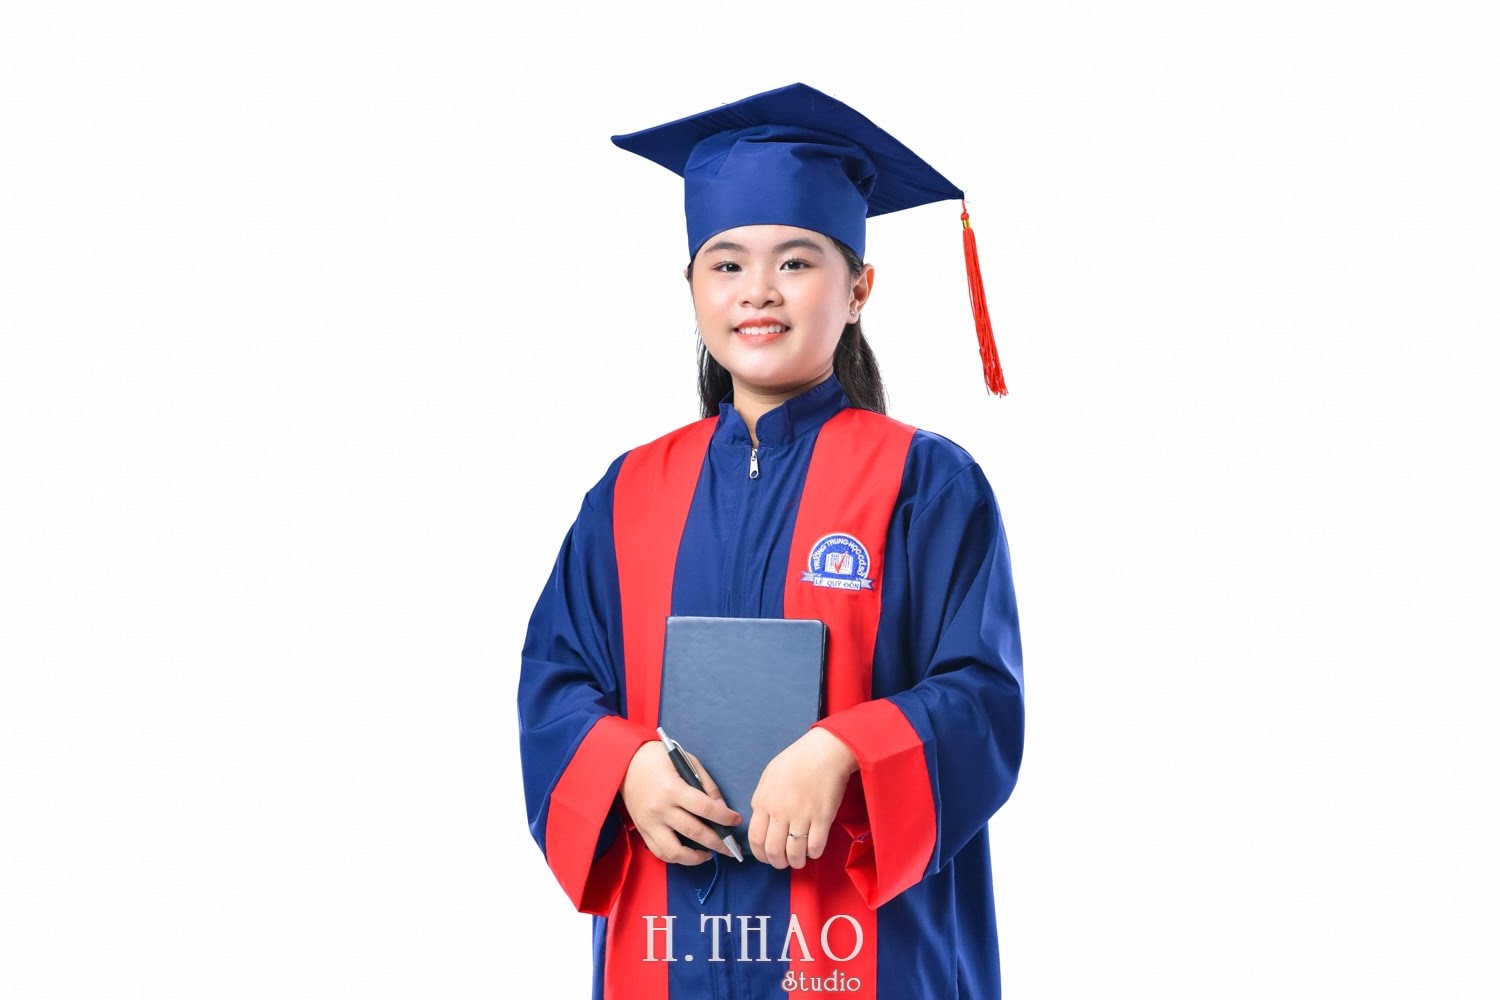 Anh tot nghiep 1 min 1 - Dịch vụ chụp ảnh tốt nghiệp cho sinh viên tại Tp.HCM – HThao Studio